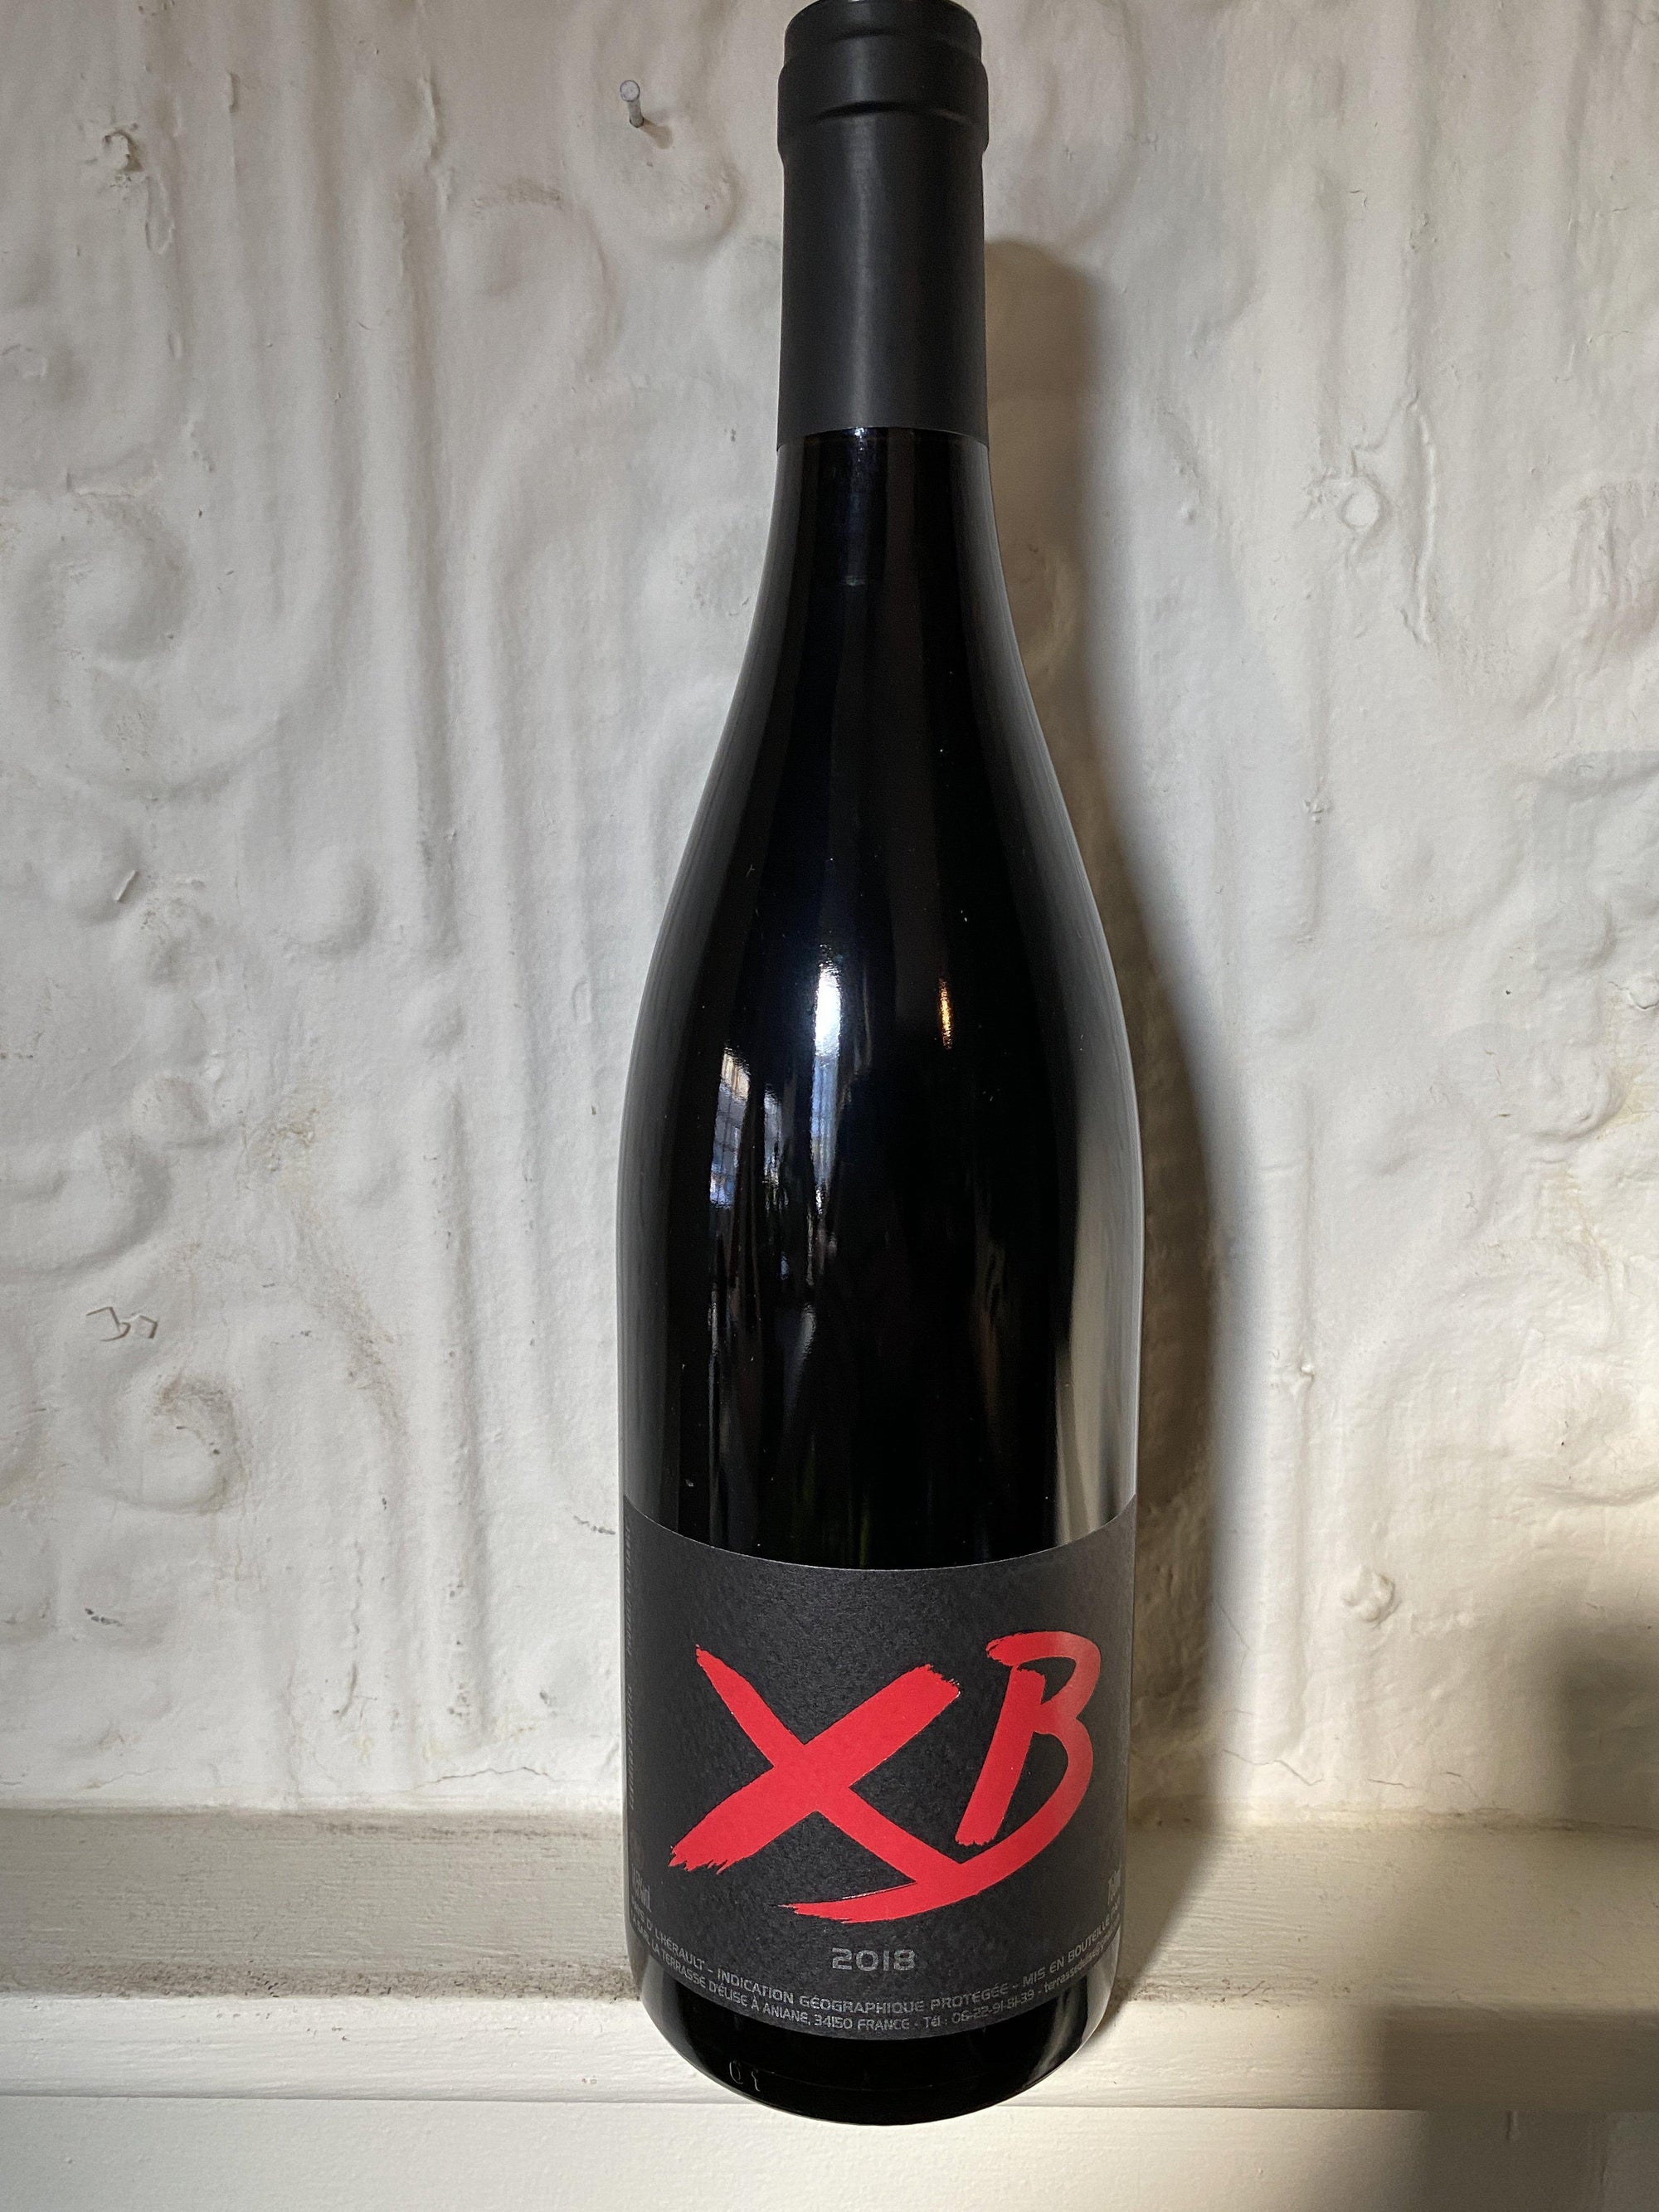 Syrah XB, La terrasse D'Elise 2018 (Languedoc, France)-Wine-Bibber & Bell